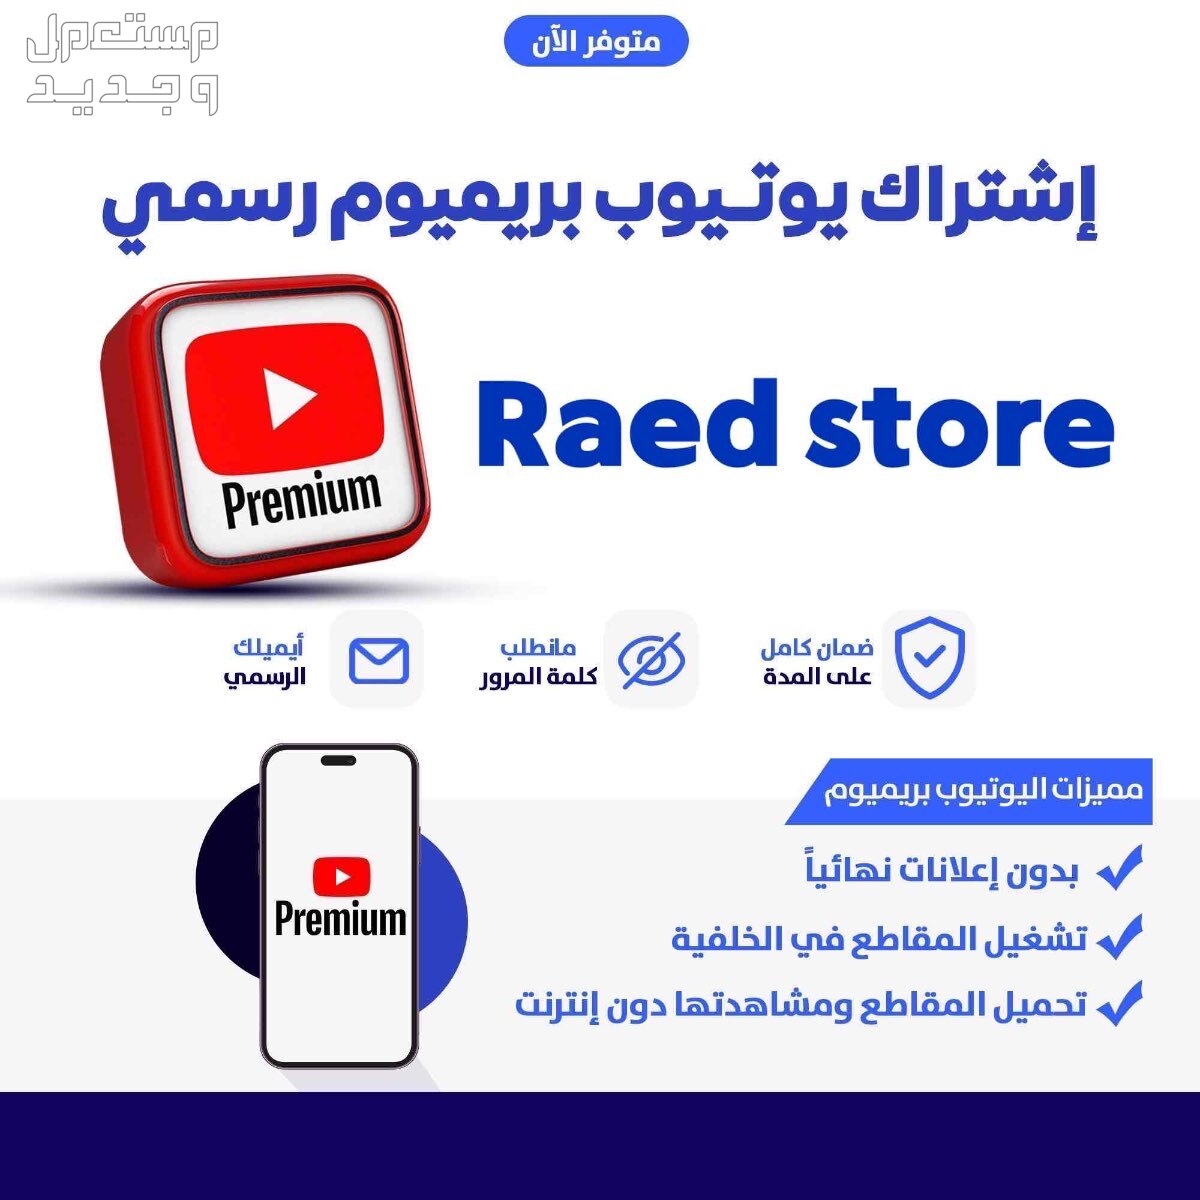 اشتراك يوتيوب بريميوم لفترة محدودة 📺 في الرياض مجاناً للمحتاج